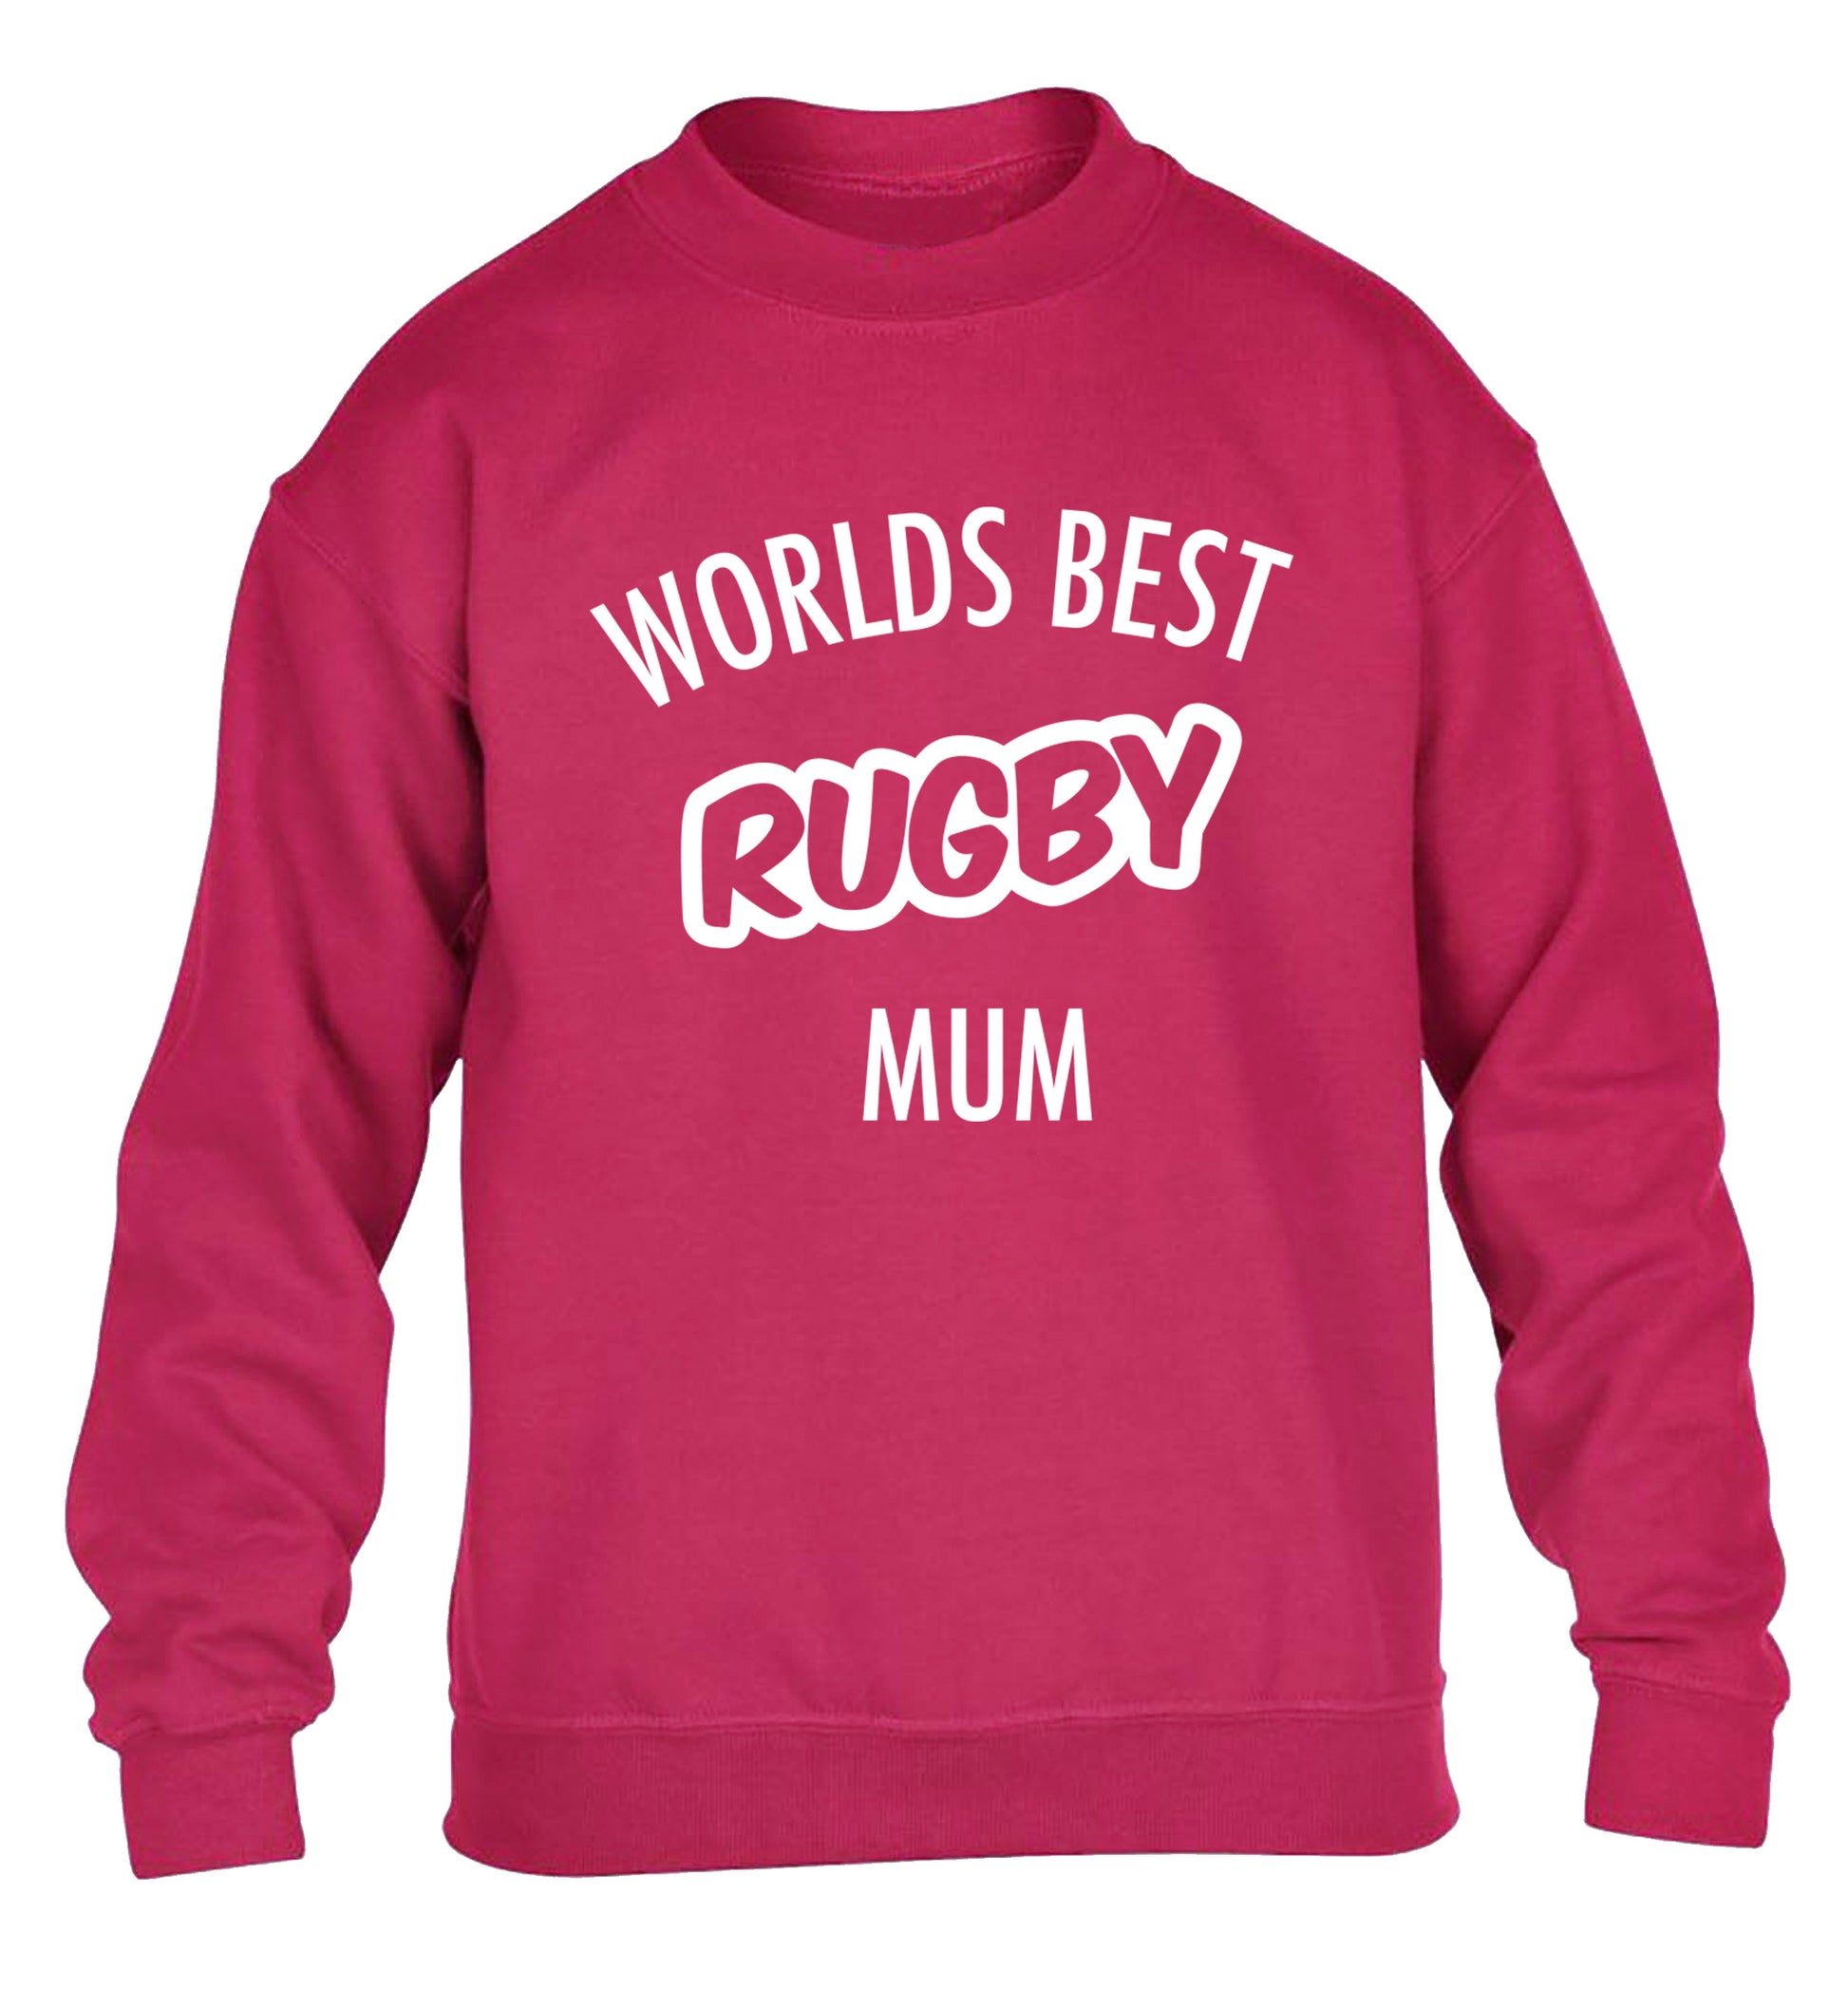 Worlds best rugby mum children's pink sweater 12-13 Years